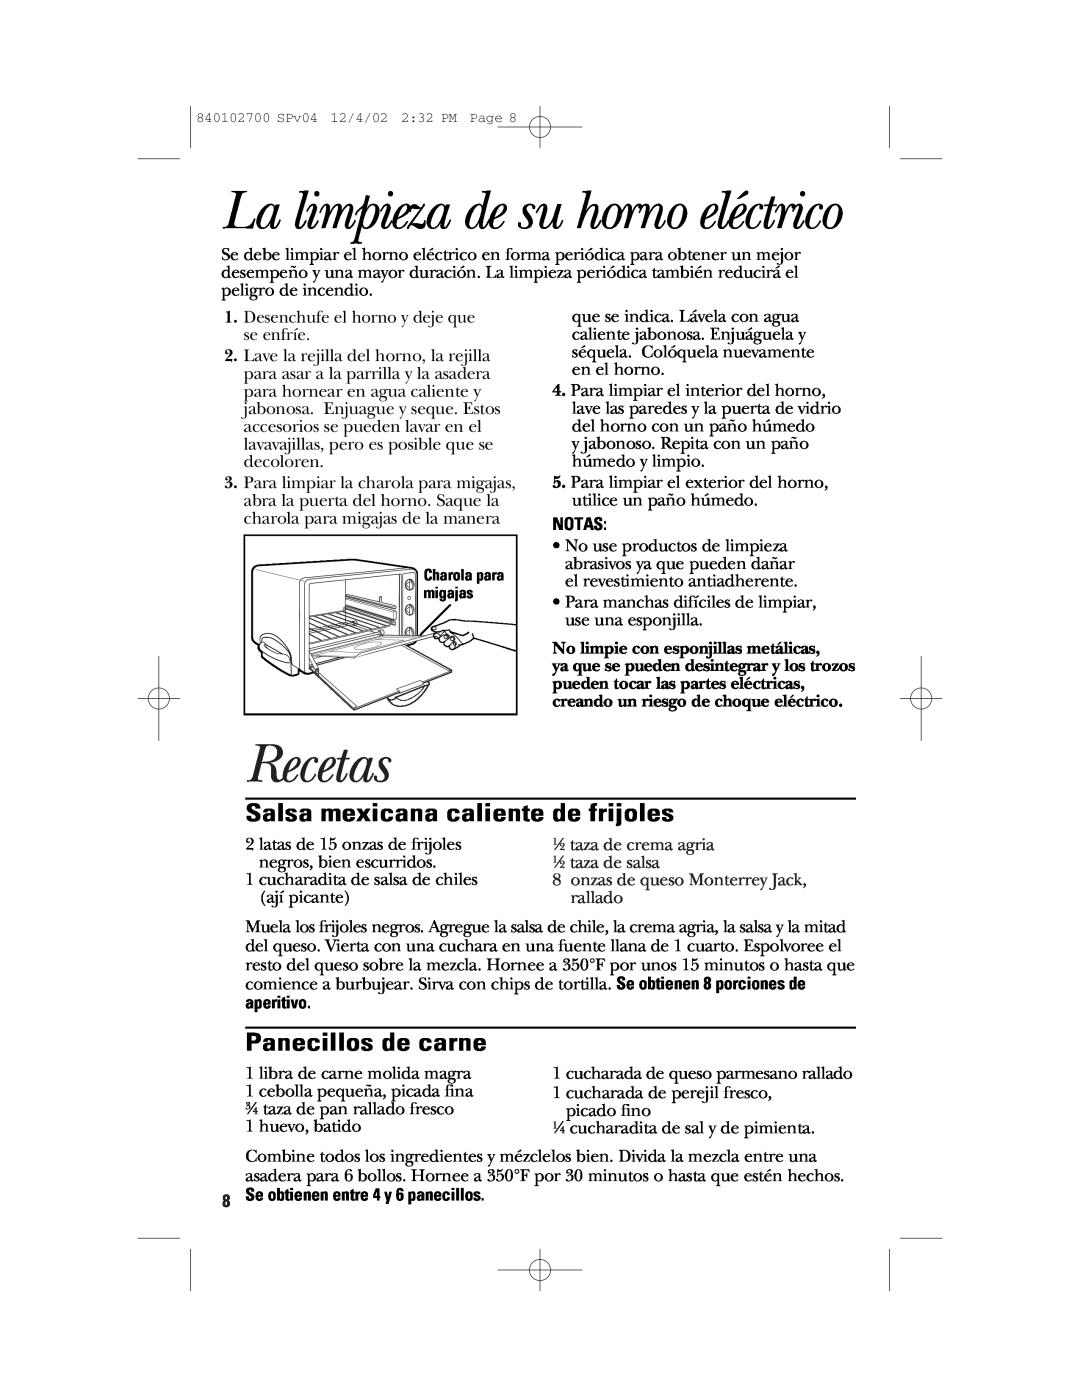 GE 106686 La limpieza de su horno eléctrico, Recetas, Salsa mexicana caliente de frijoles, Panecillos de carne, Notas 